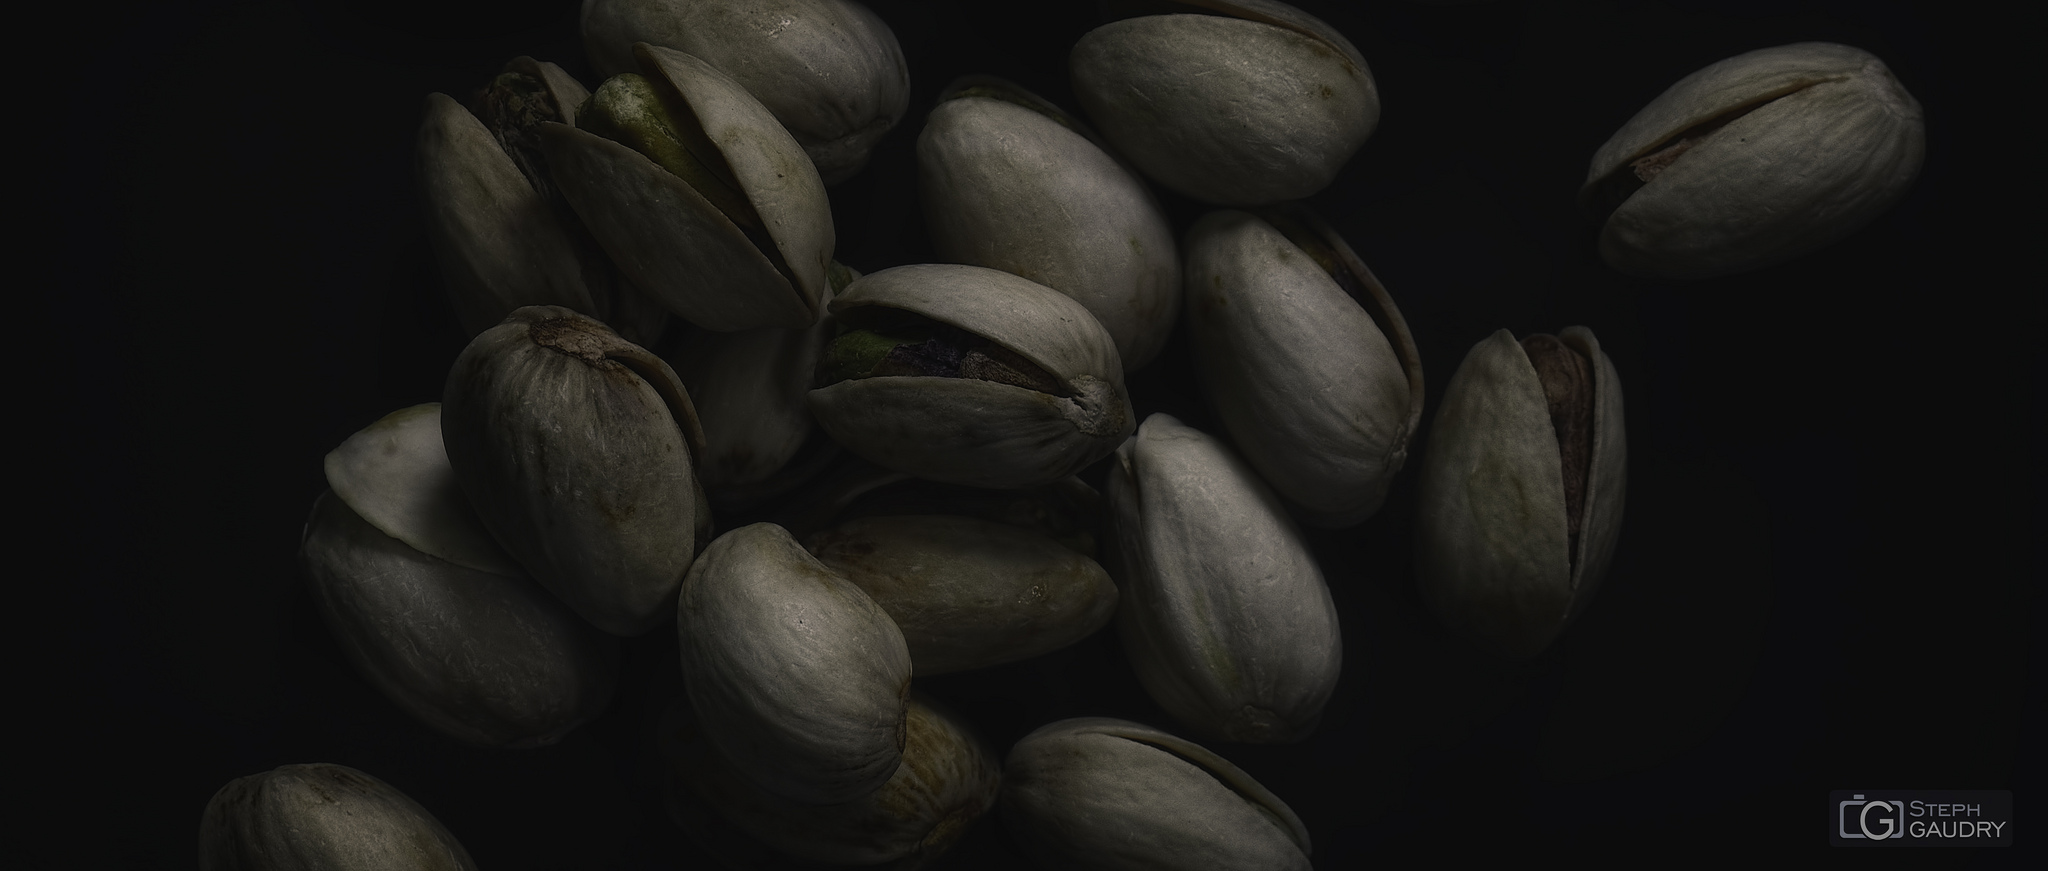 Roasted pistachio seeds with shells [Klicken Sie hier, um die Diashow zu starten]